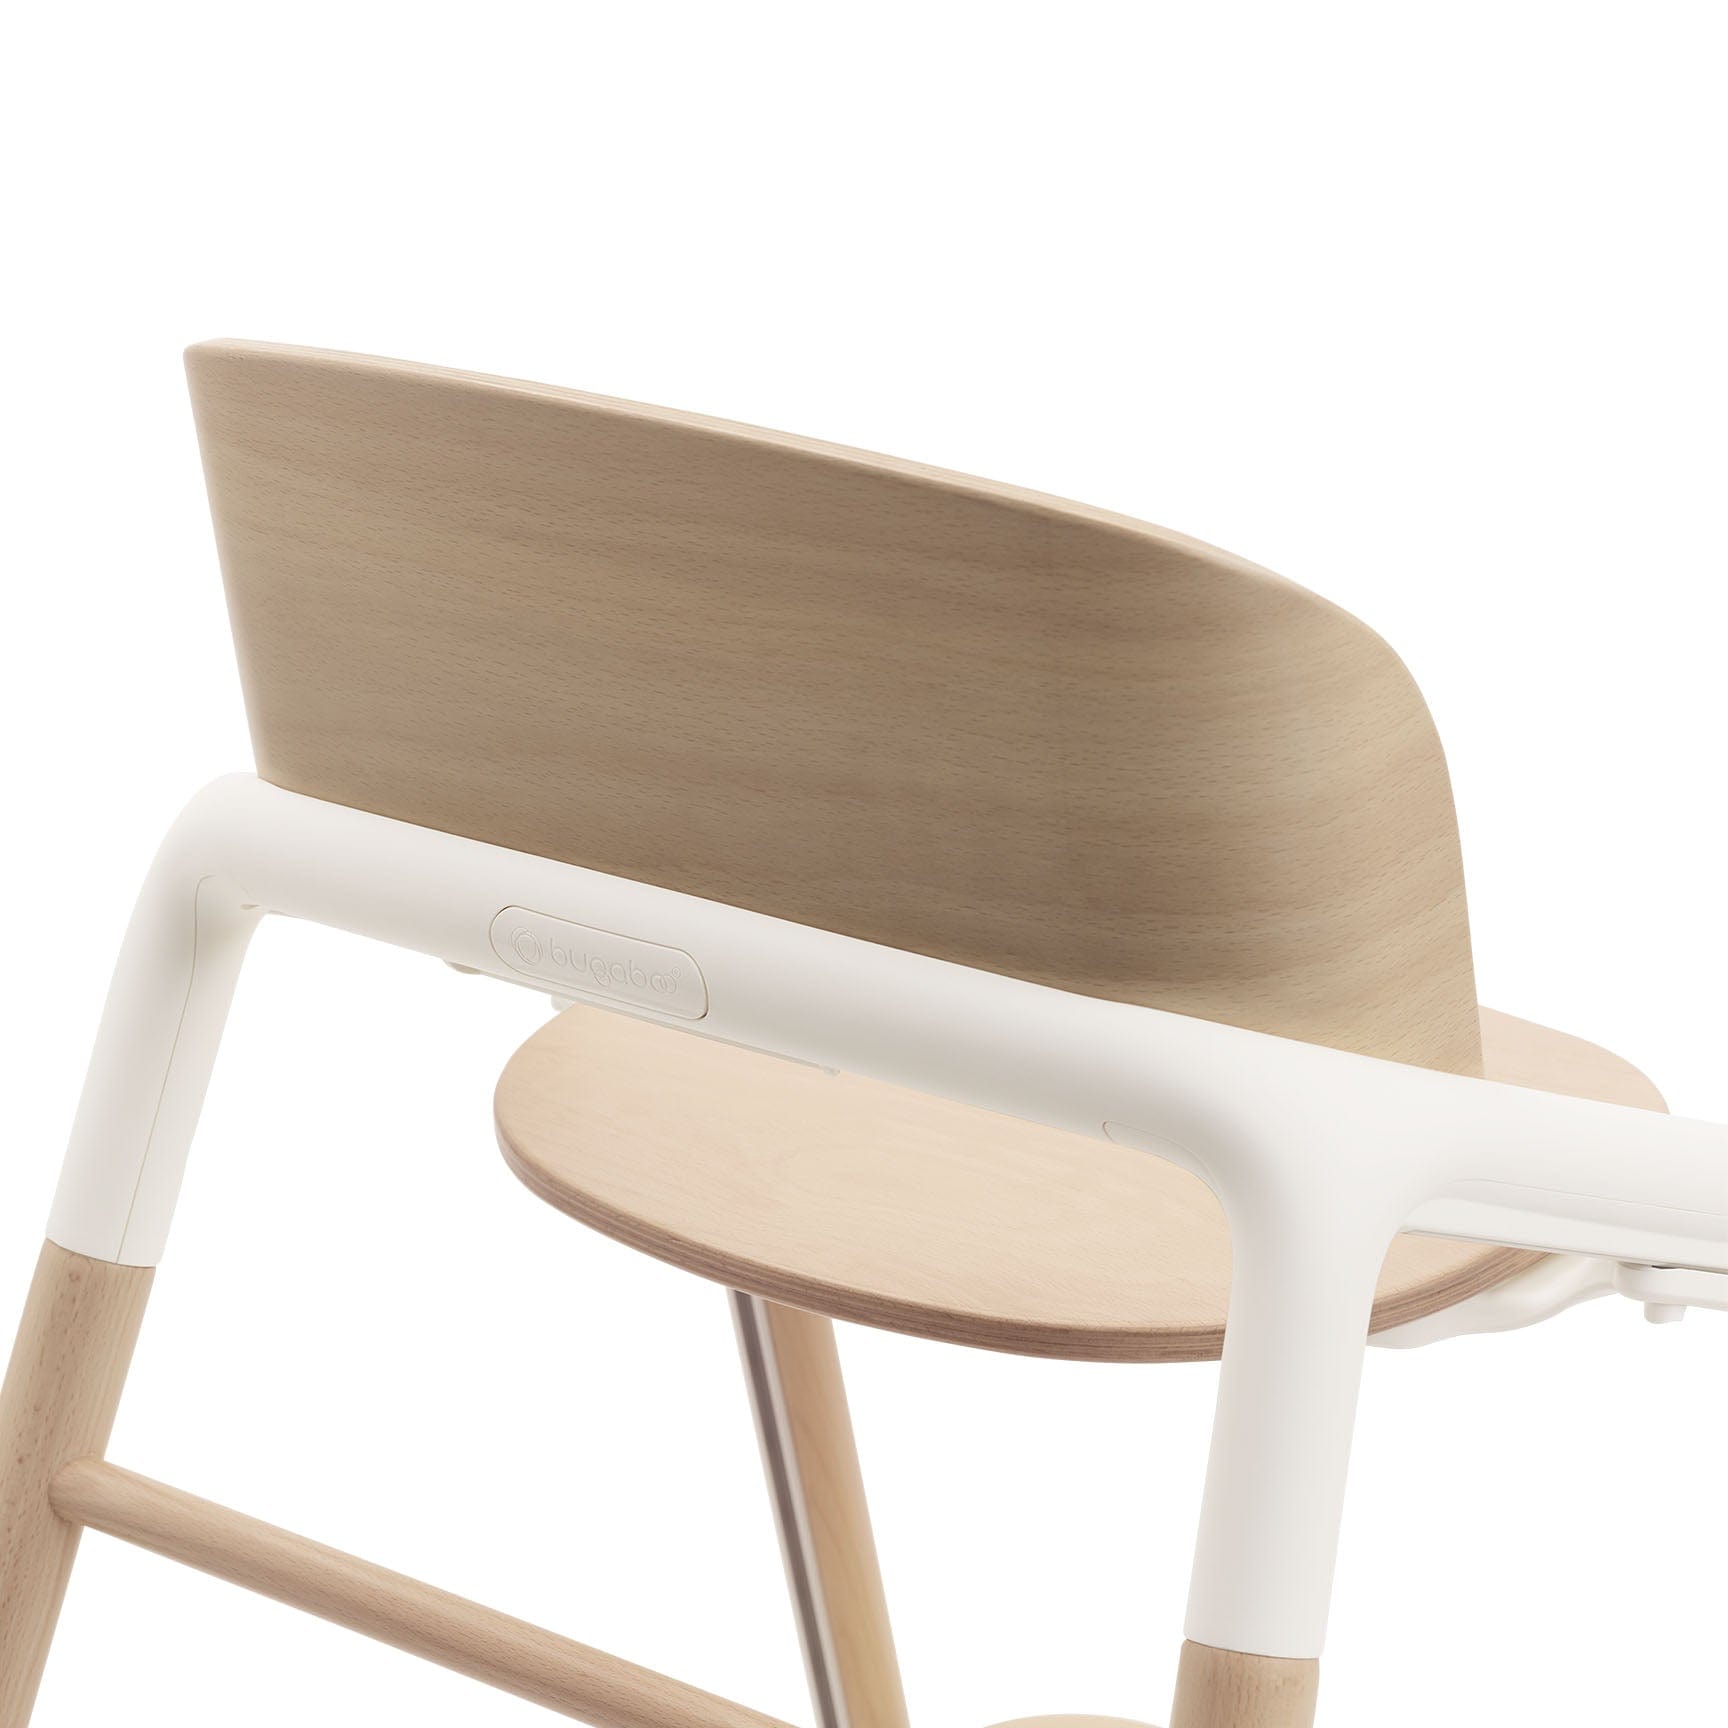 Bugaboo Giraffe Chair and Newborn Set in Wood White Baby Highchairs 12259-WOO-WHT 8717447401407